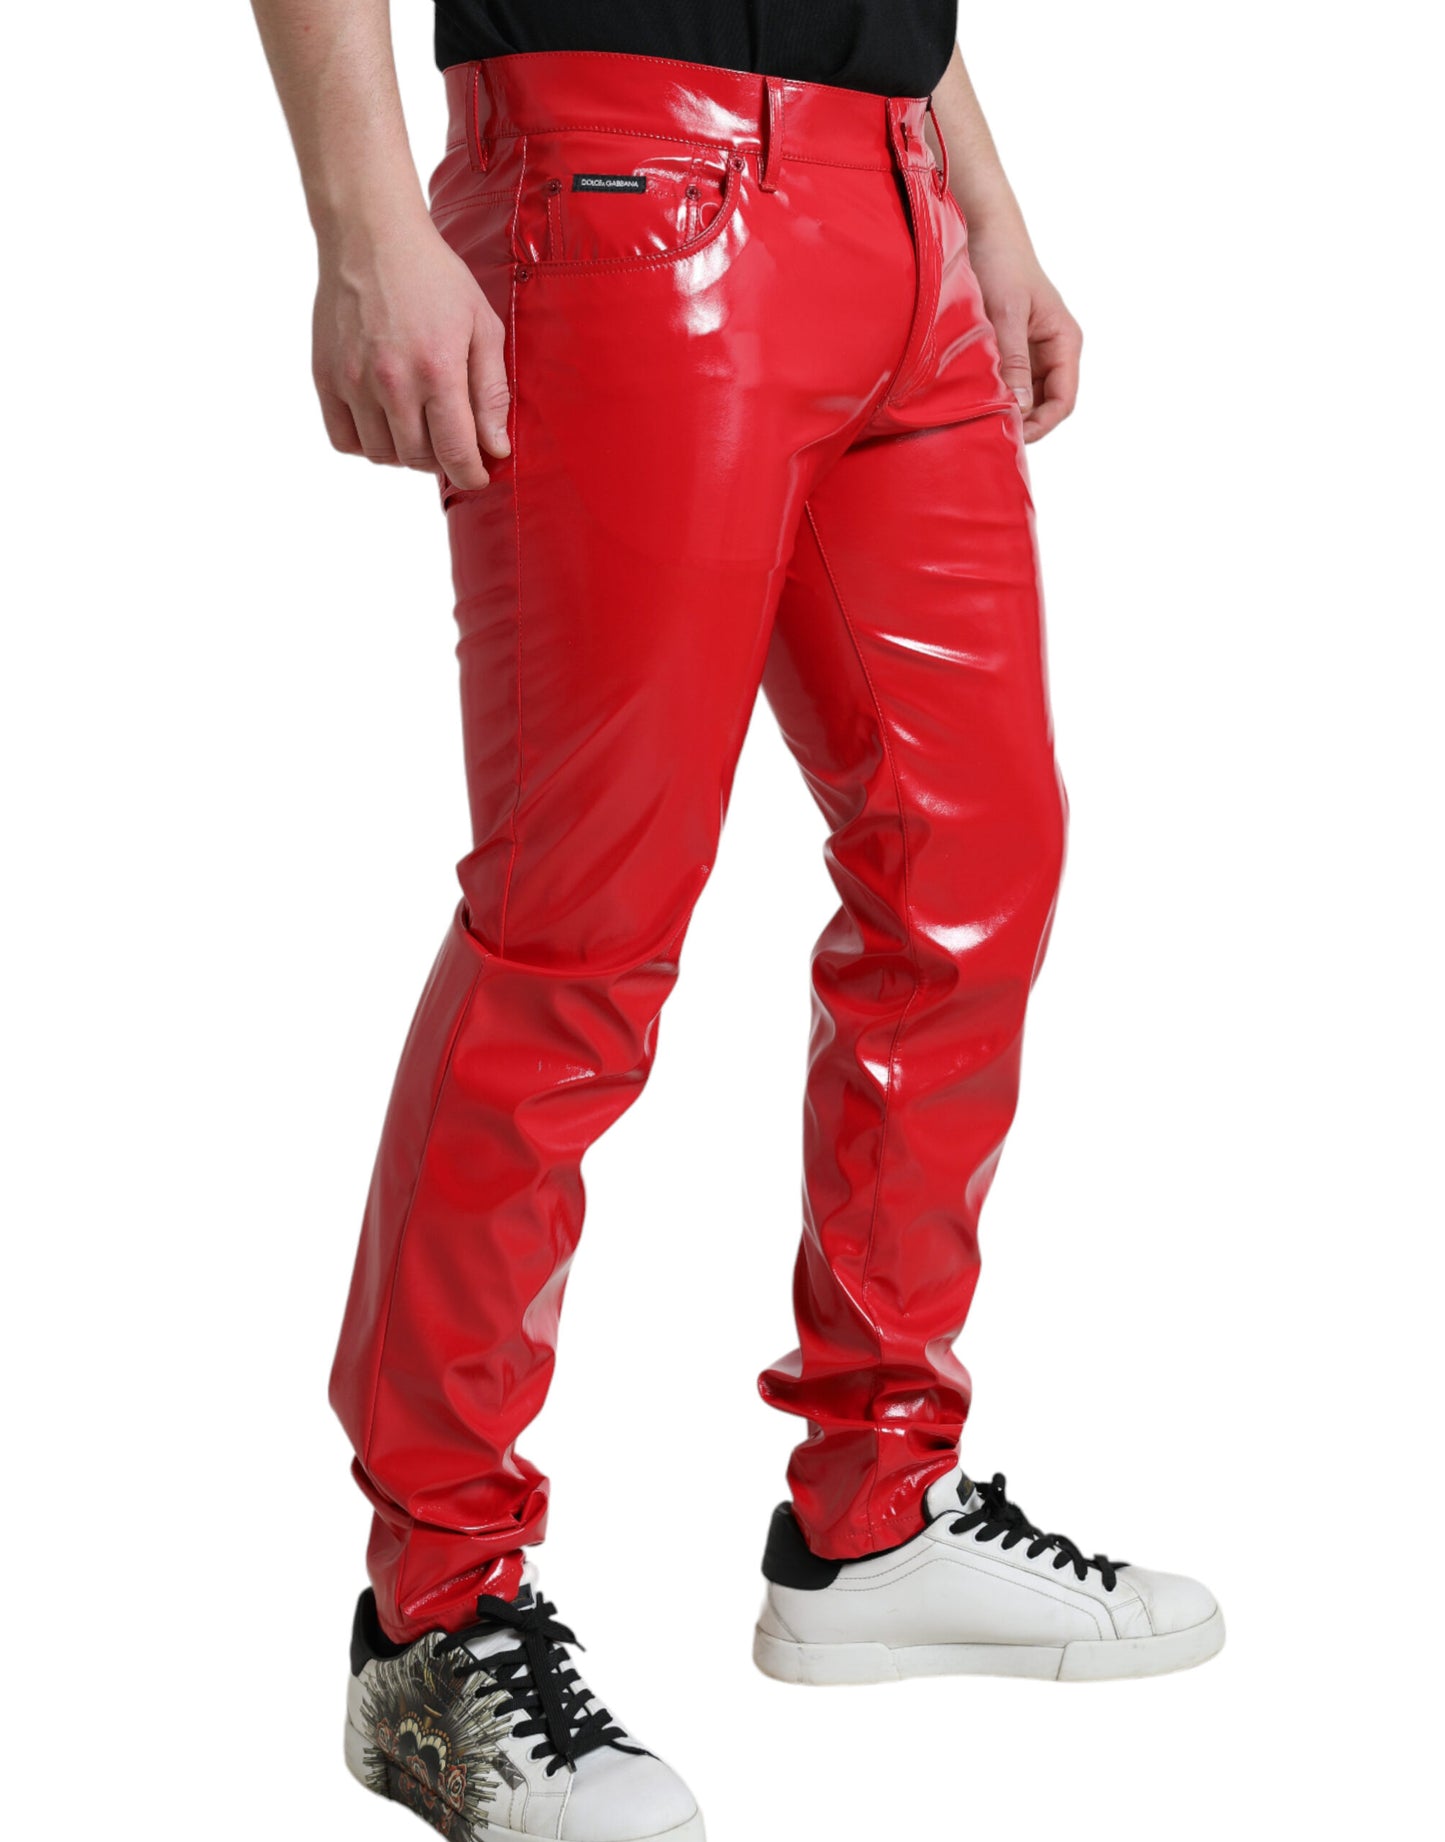 Sleek Red Glossy Skinny Pants